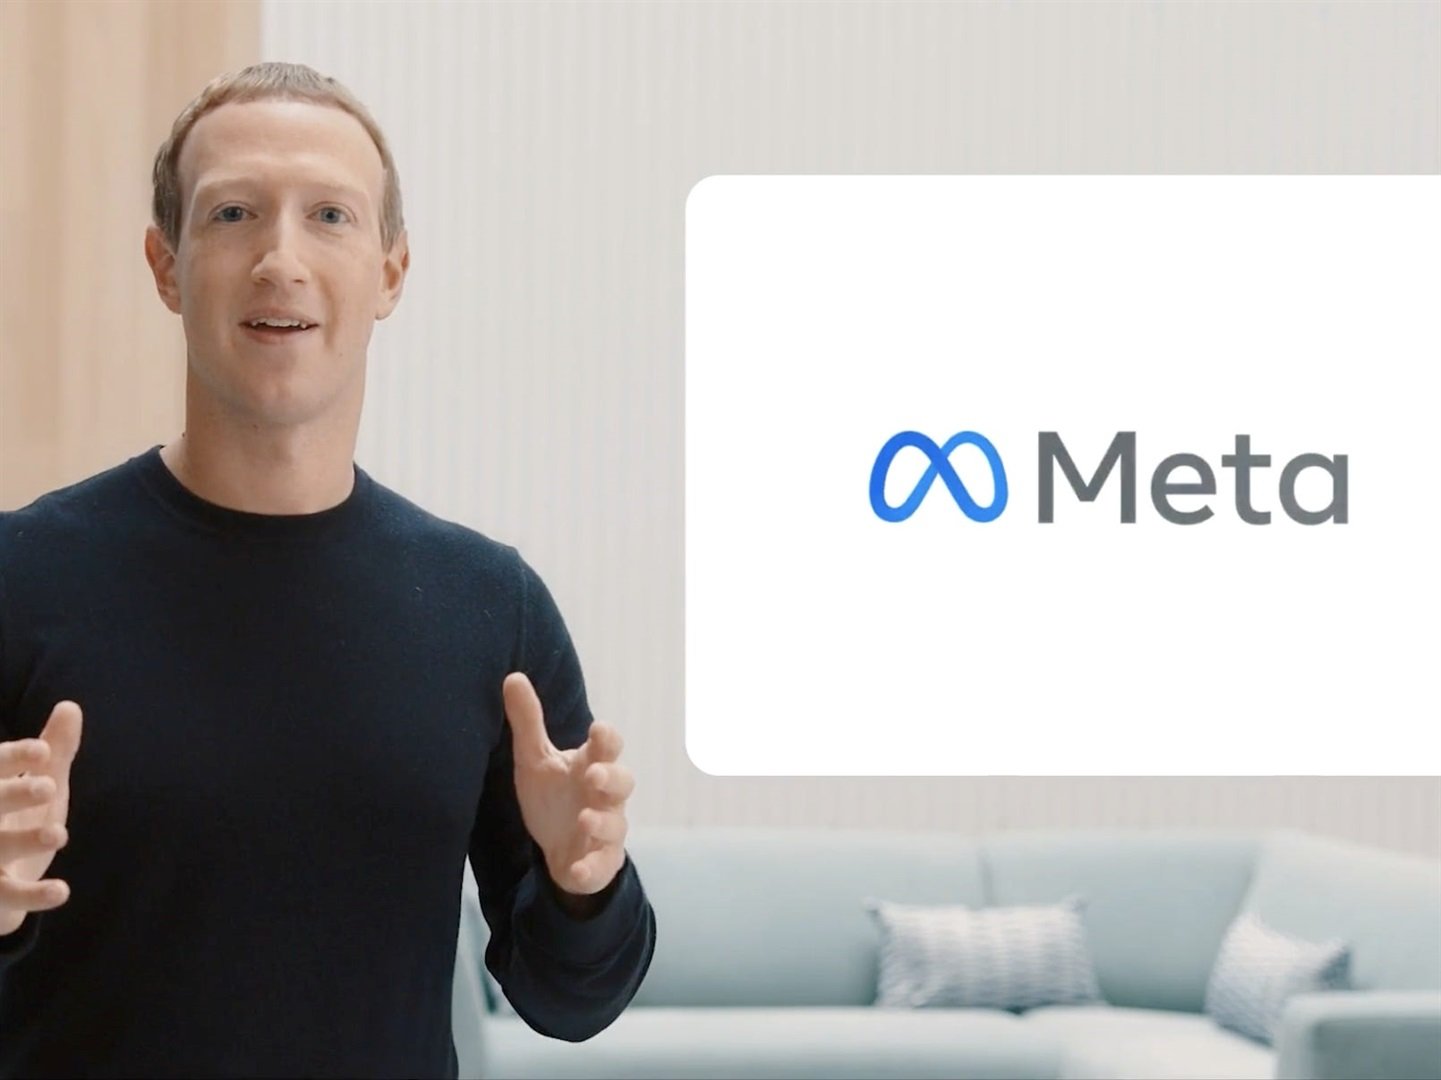 CEO Mark Zuckerberg announced recently that Facebook was rebranding as Meta. 